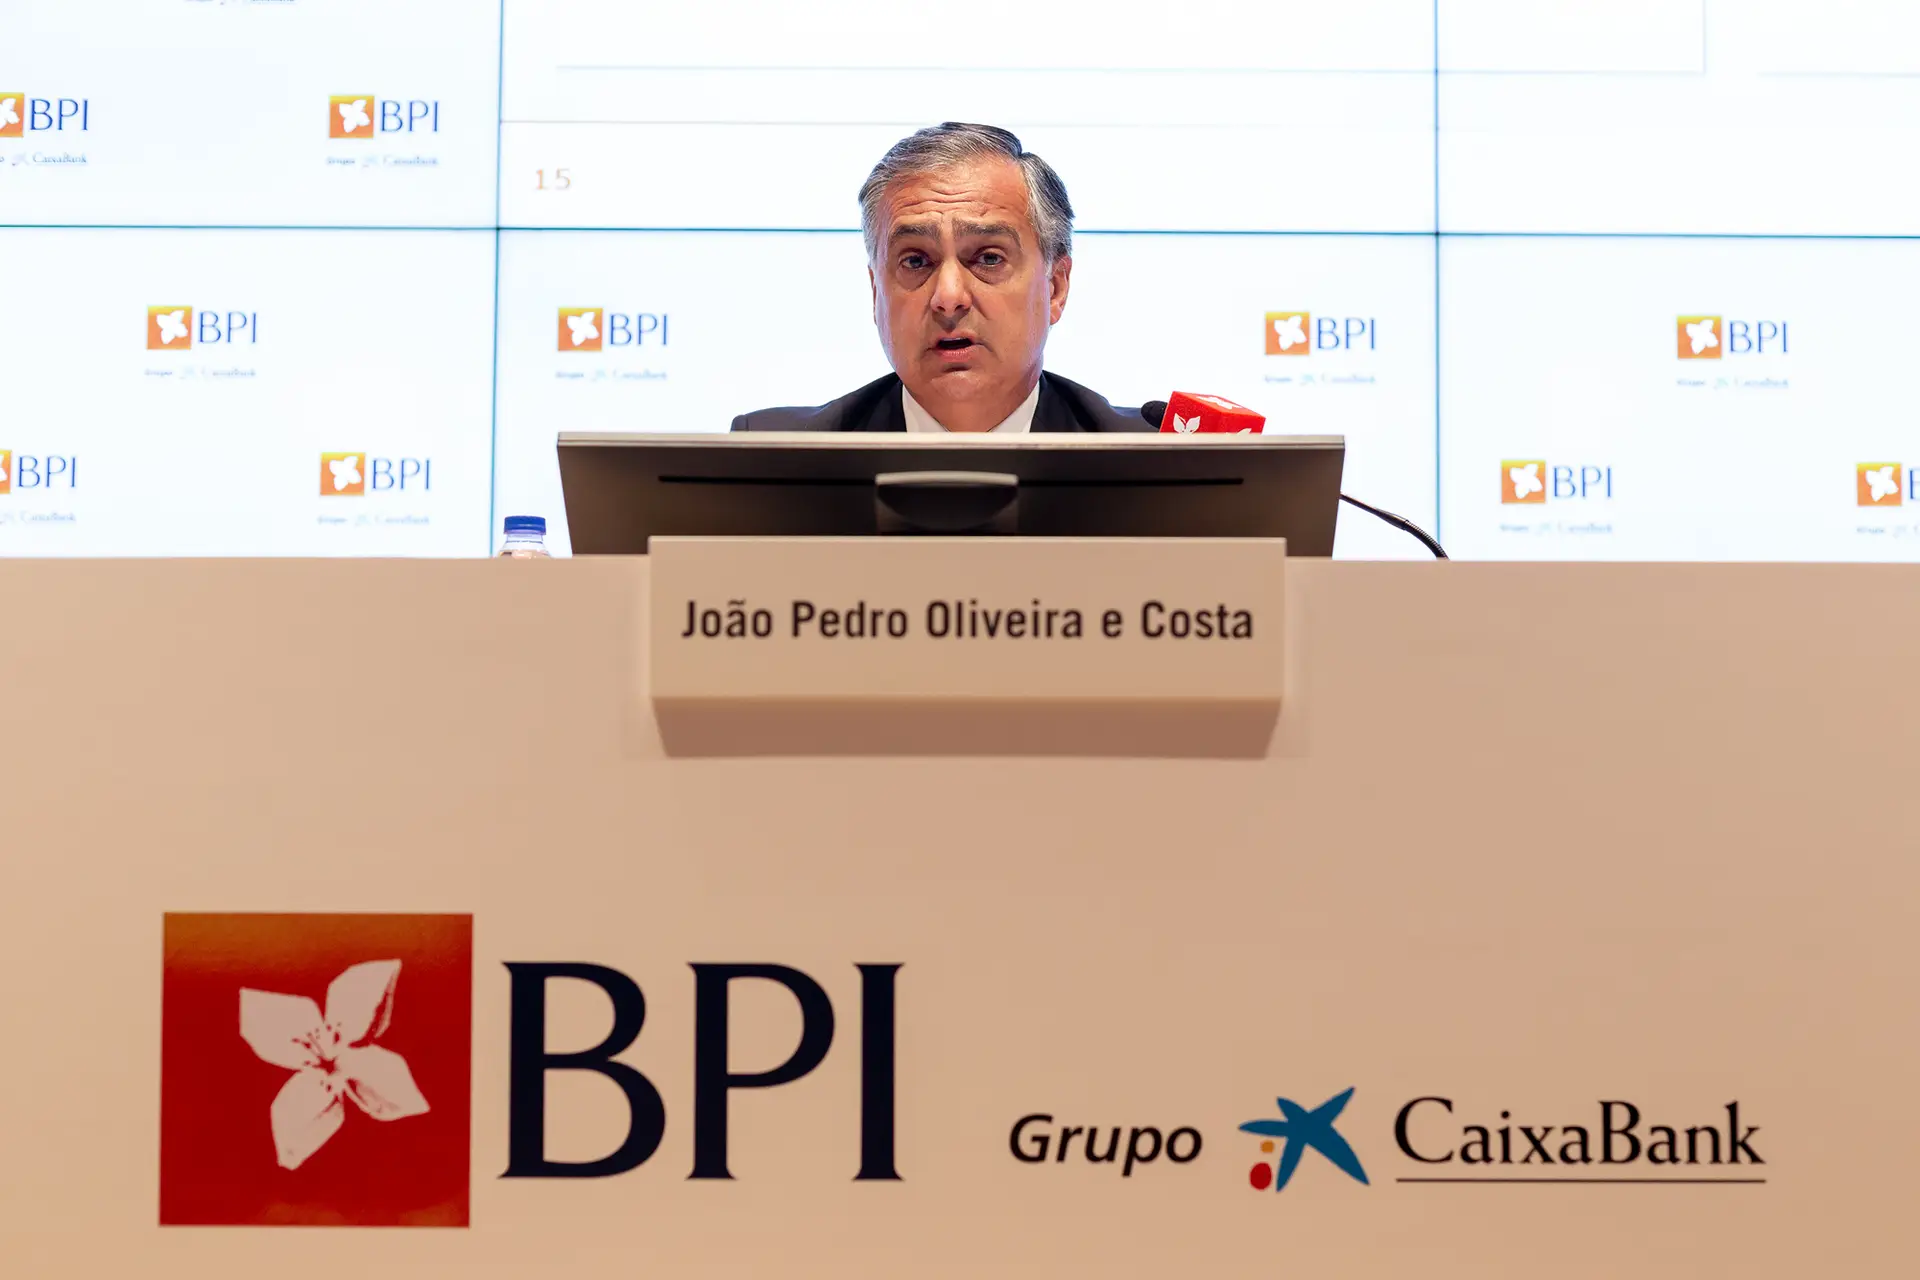 Resultado do BPI em Portugal mais do que duplicou no primeiro trimestre